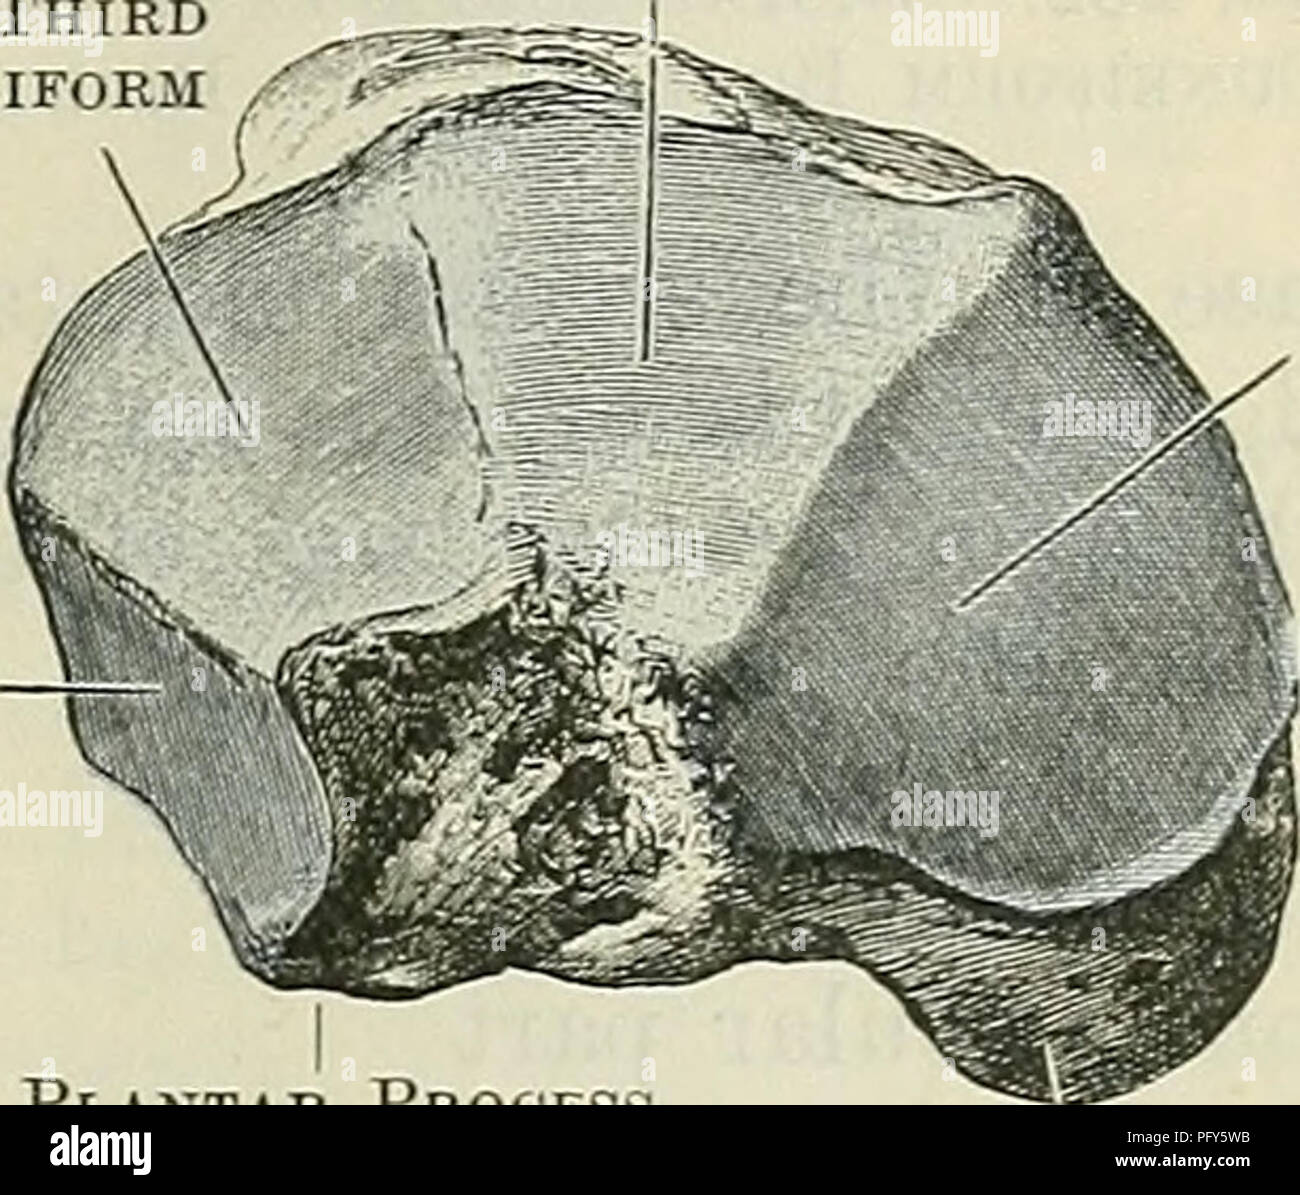 . Cunningham il libro di testo di anatomia. Anatomia. Il CUNEIFOEM ossa. 261 i cui bordi sono striati. In questa superficie il calcagno tendo è inserito. La superficie più bassa è ruvida e striata, e confluenti è al di sotto di con il mediale e laterale di processi; questo è sovrastato dal denso strato di tessuto che forma il pad del tacco. Os Naviculare Pedis. Il navicular osso (A.T. scafoide), della compressa di forma piriforme, è collocato sul lato mediale del piede, tra la testa del astragalo posteriormente e le tre ossa cuneiformi anteriormente. L'osso deriva il suo nome dalla forma ovale o barca-s Foto Stock